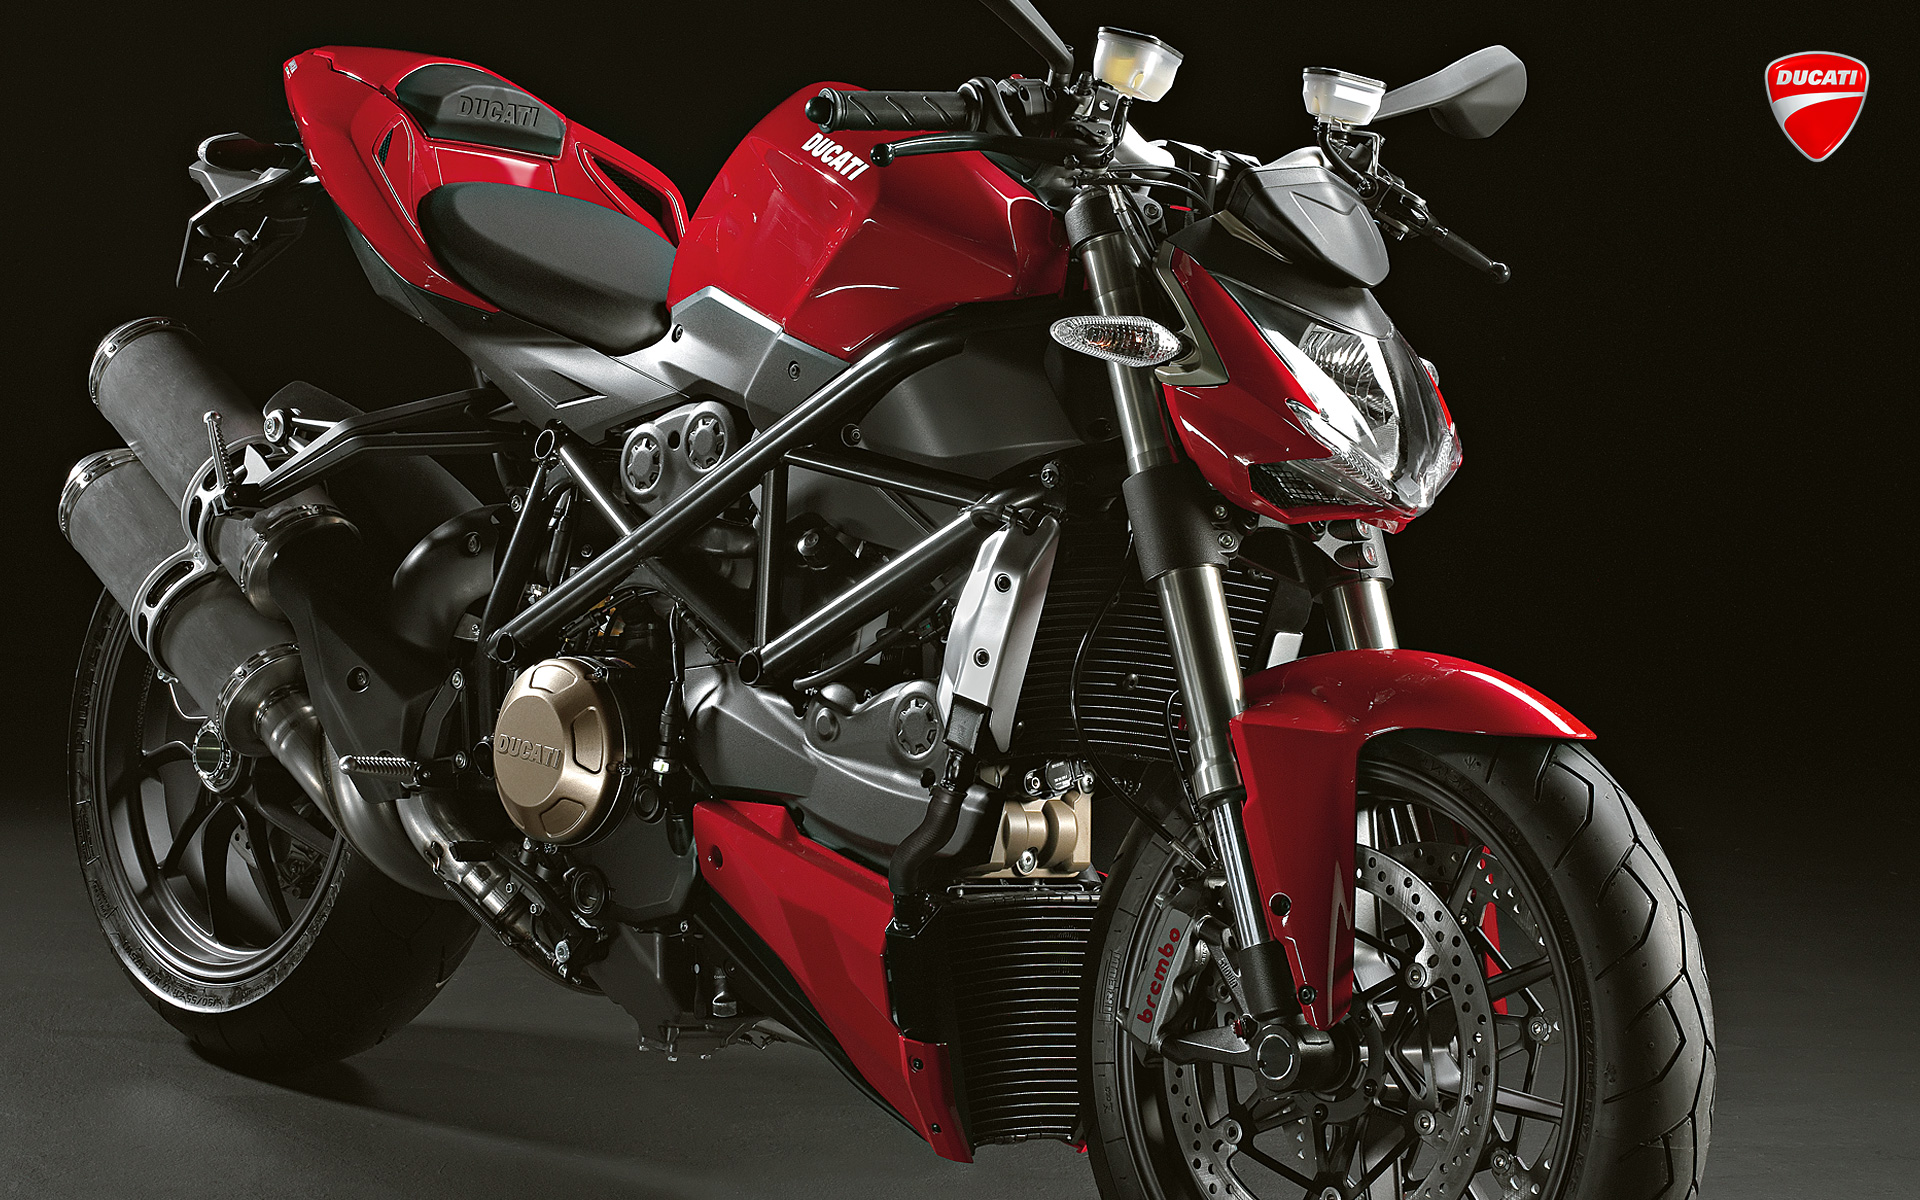 [49+] Ducati Motorcycles Wallpaper 1080p on WallpaperSafari